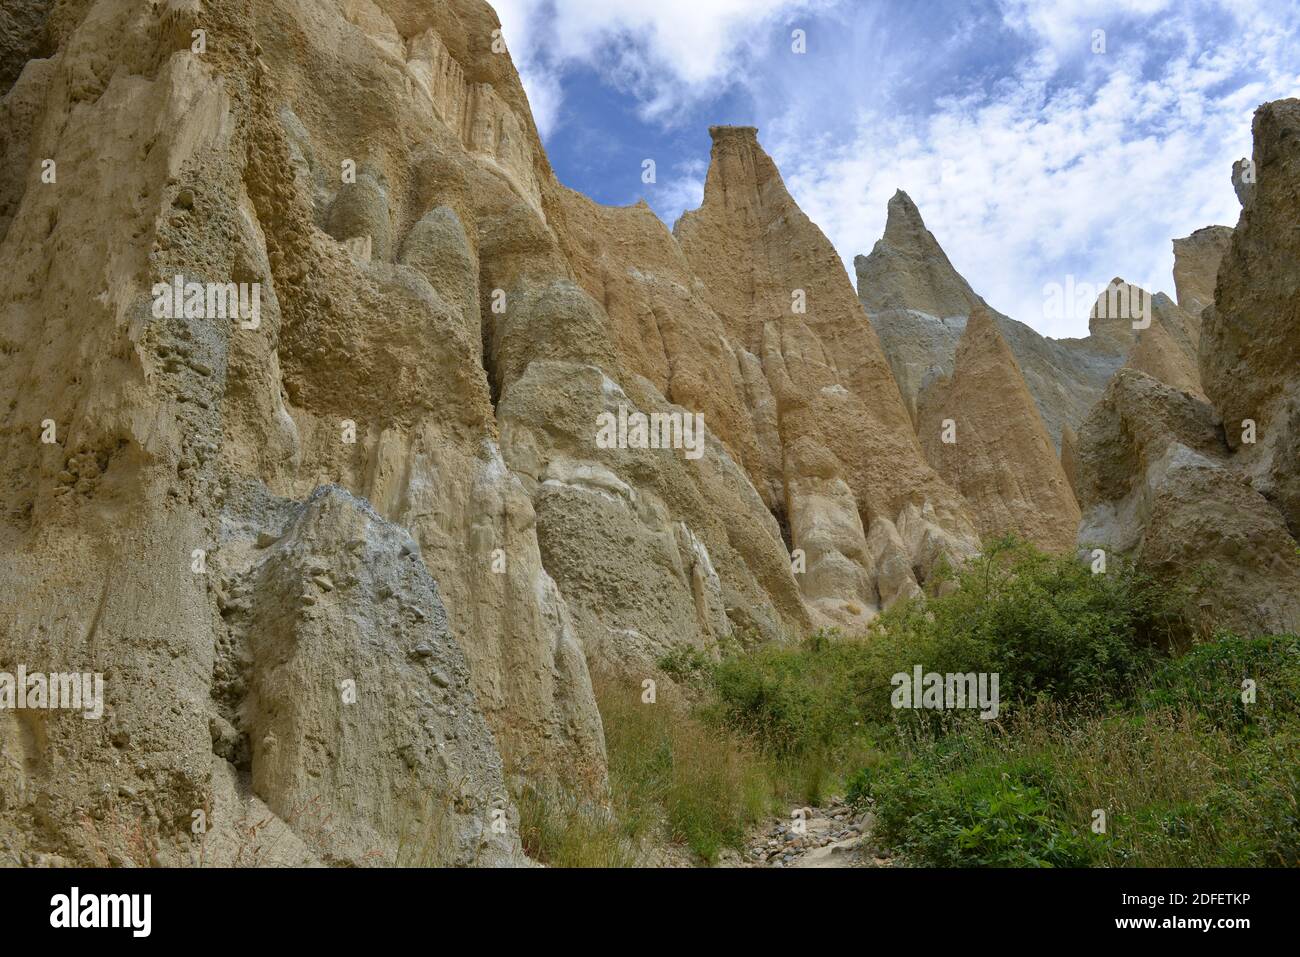 Clay Cliffs of Omarama Stock Photo